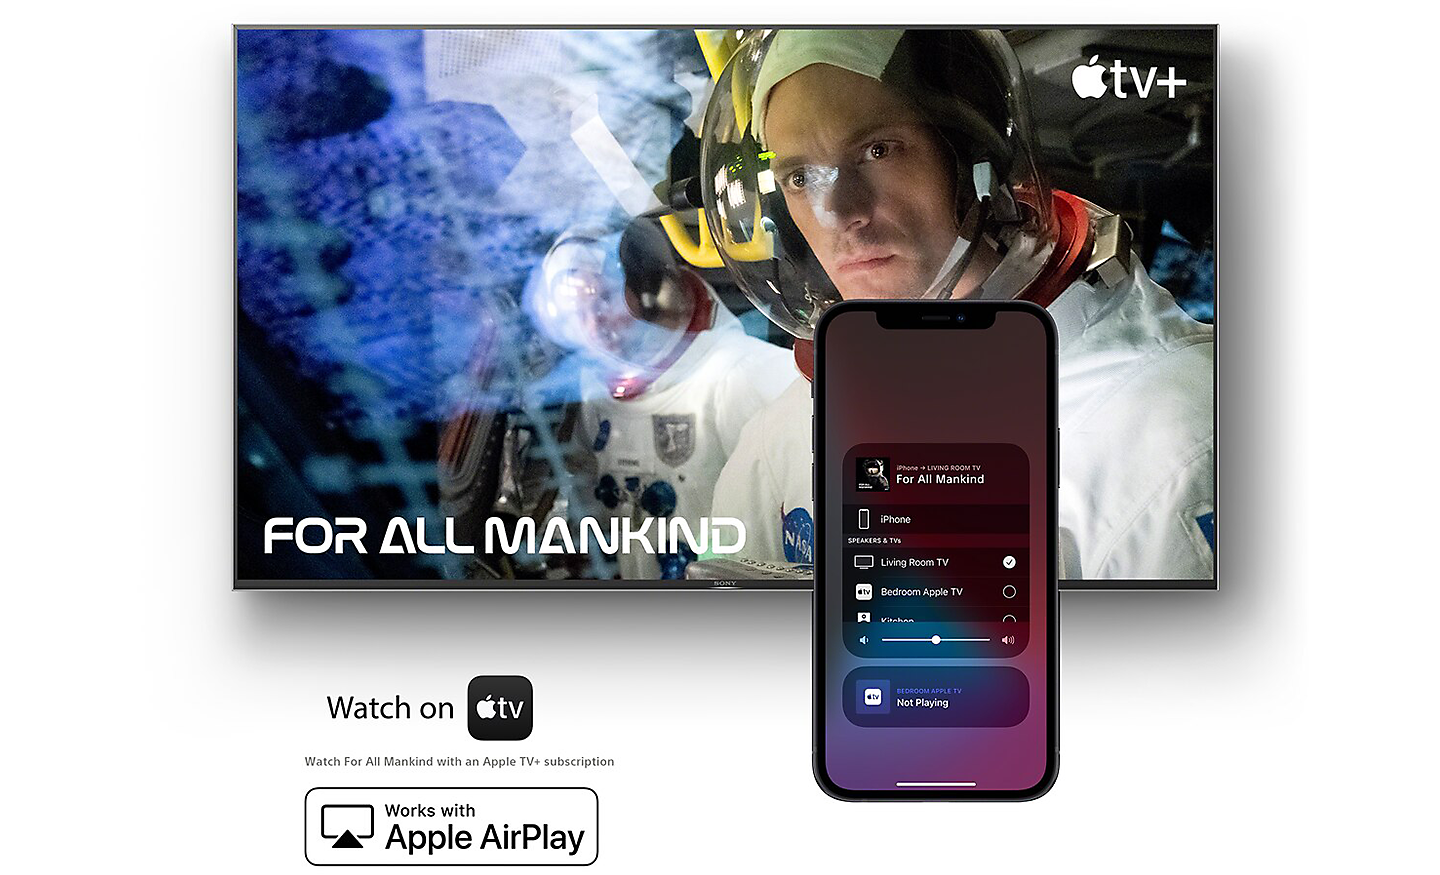 Obrazovka zobrazujúca seriál For All Mankind v aplikácii Apple TV so smartfónom v popredí